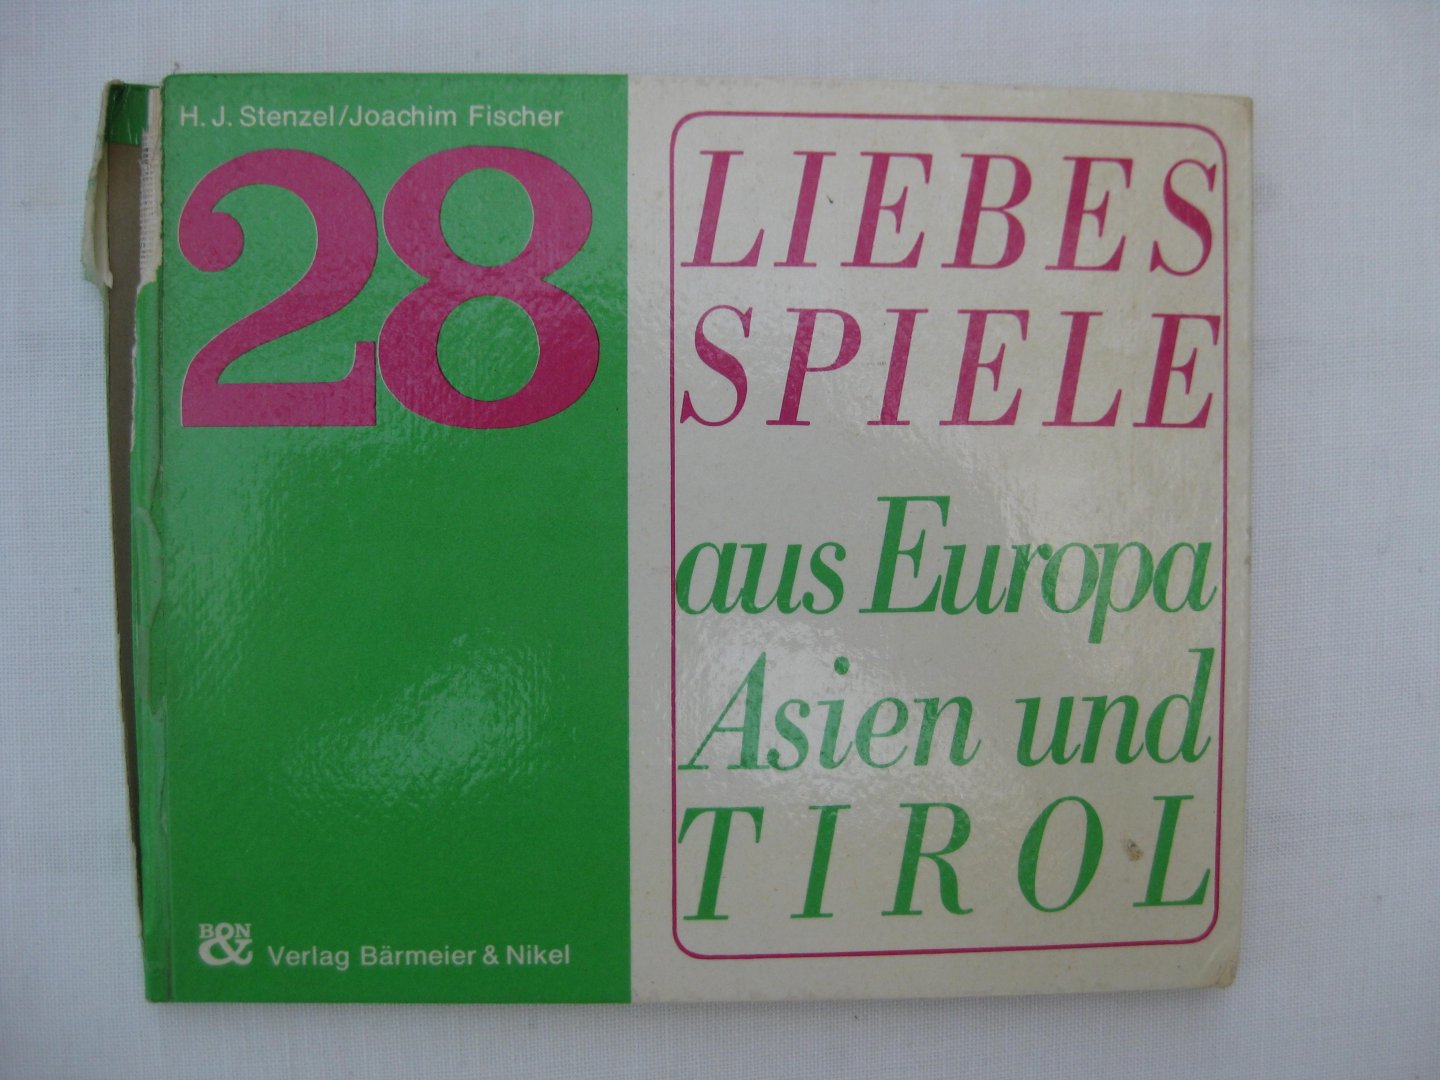 Fischer, Joachim und Stenzel, H.J. - 28 Liebesspiele aus Europa, asien und Tirol.